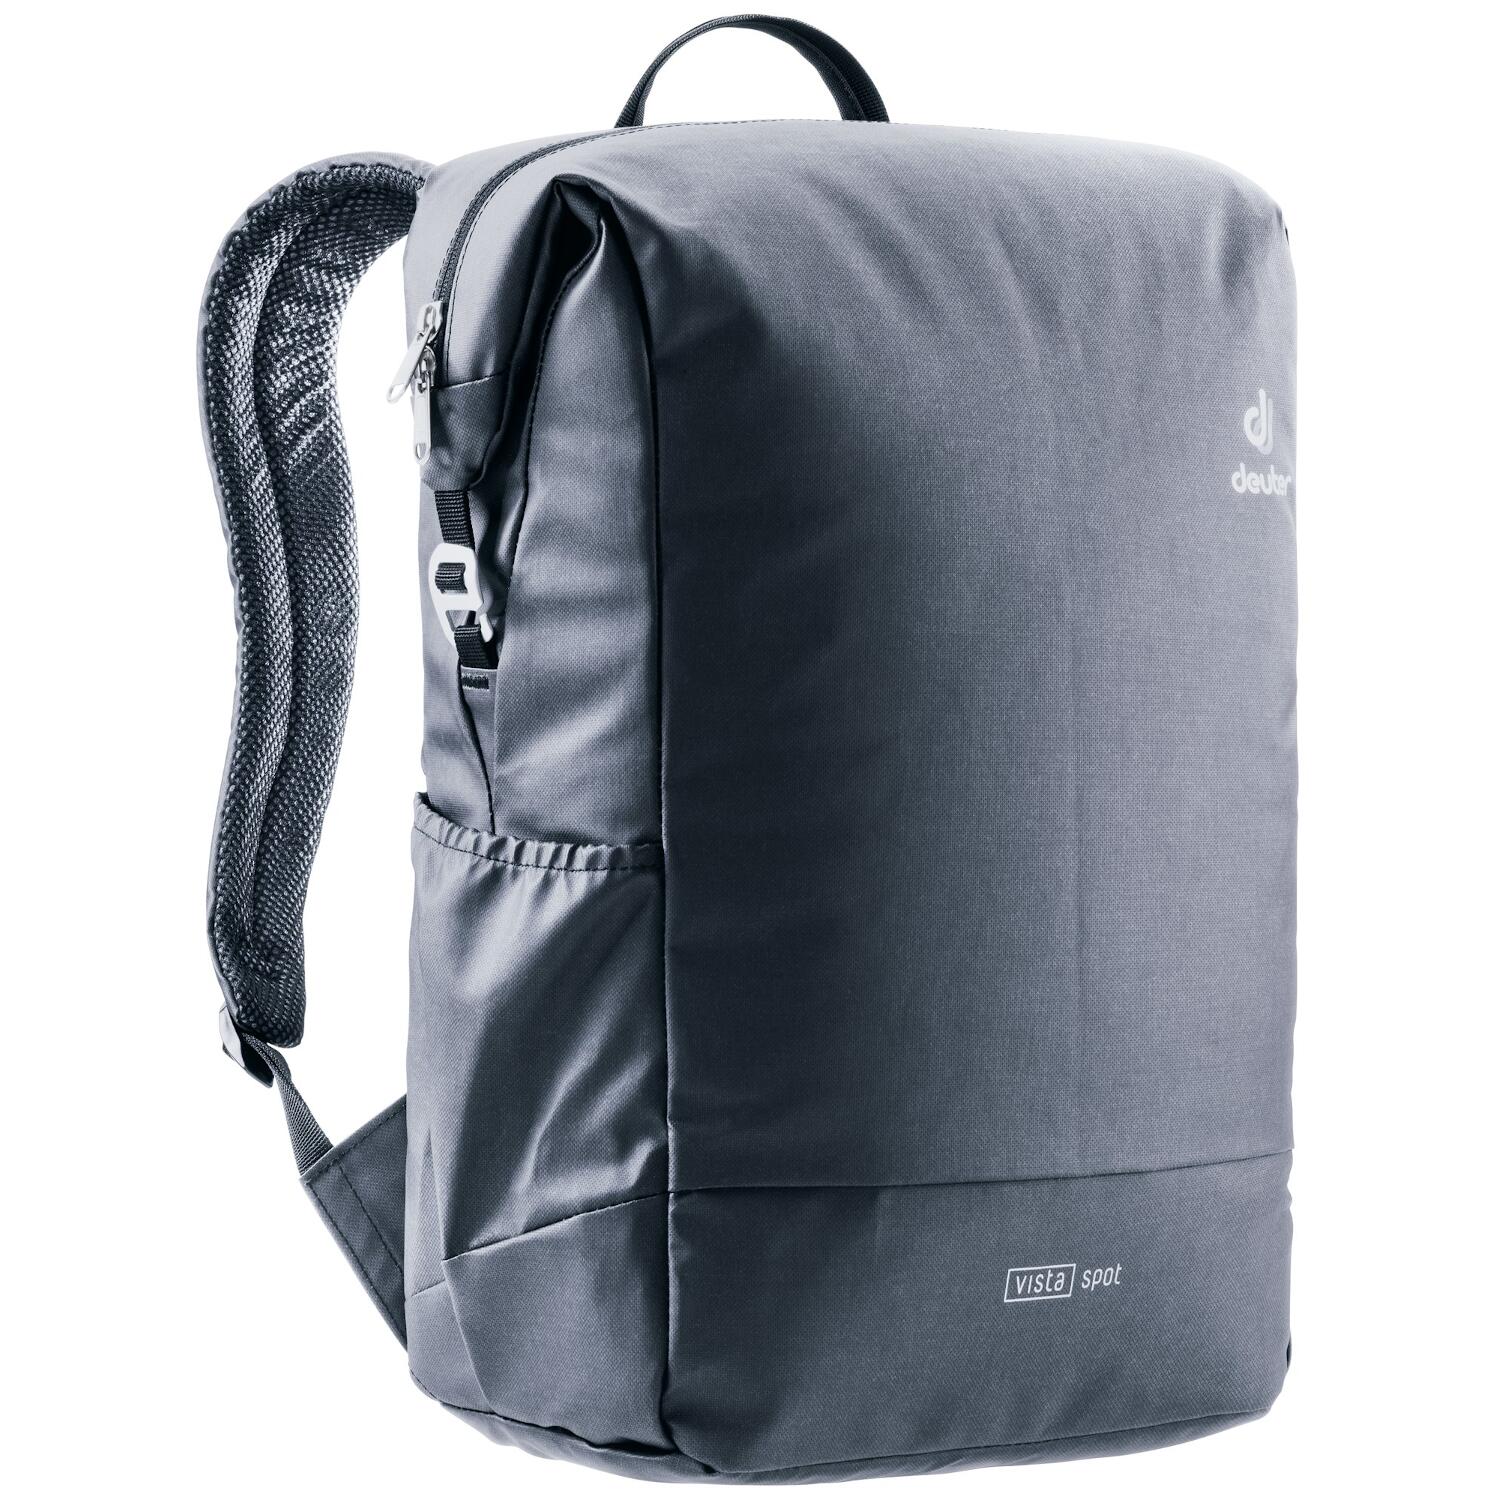 Deuter Vista Spot Daypack Rucksack black coat *Limited Edition* | jetzt  online kaufen auf Koffer.de